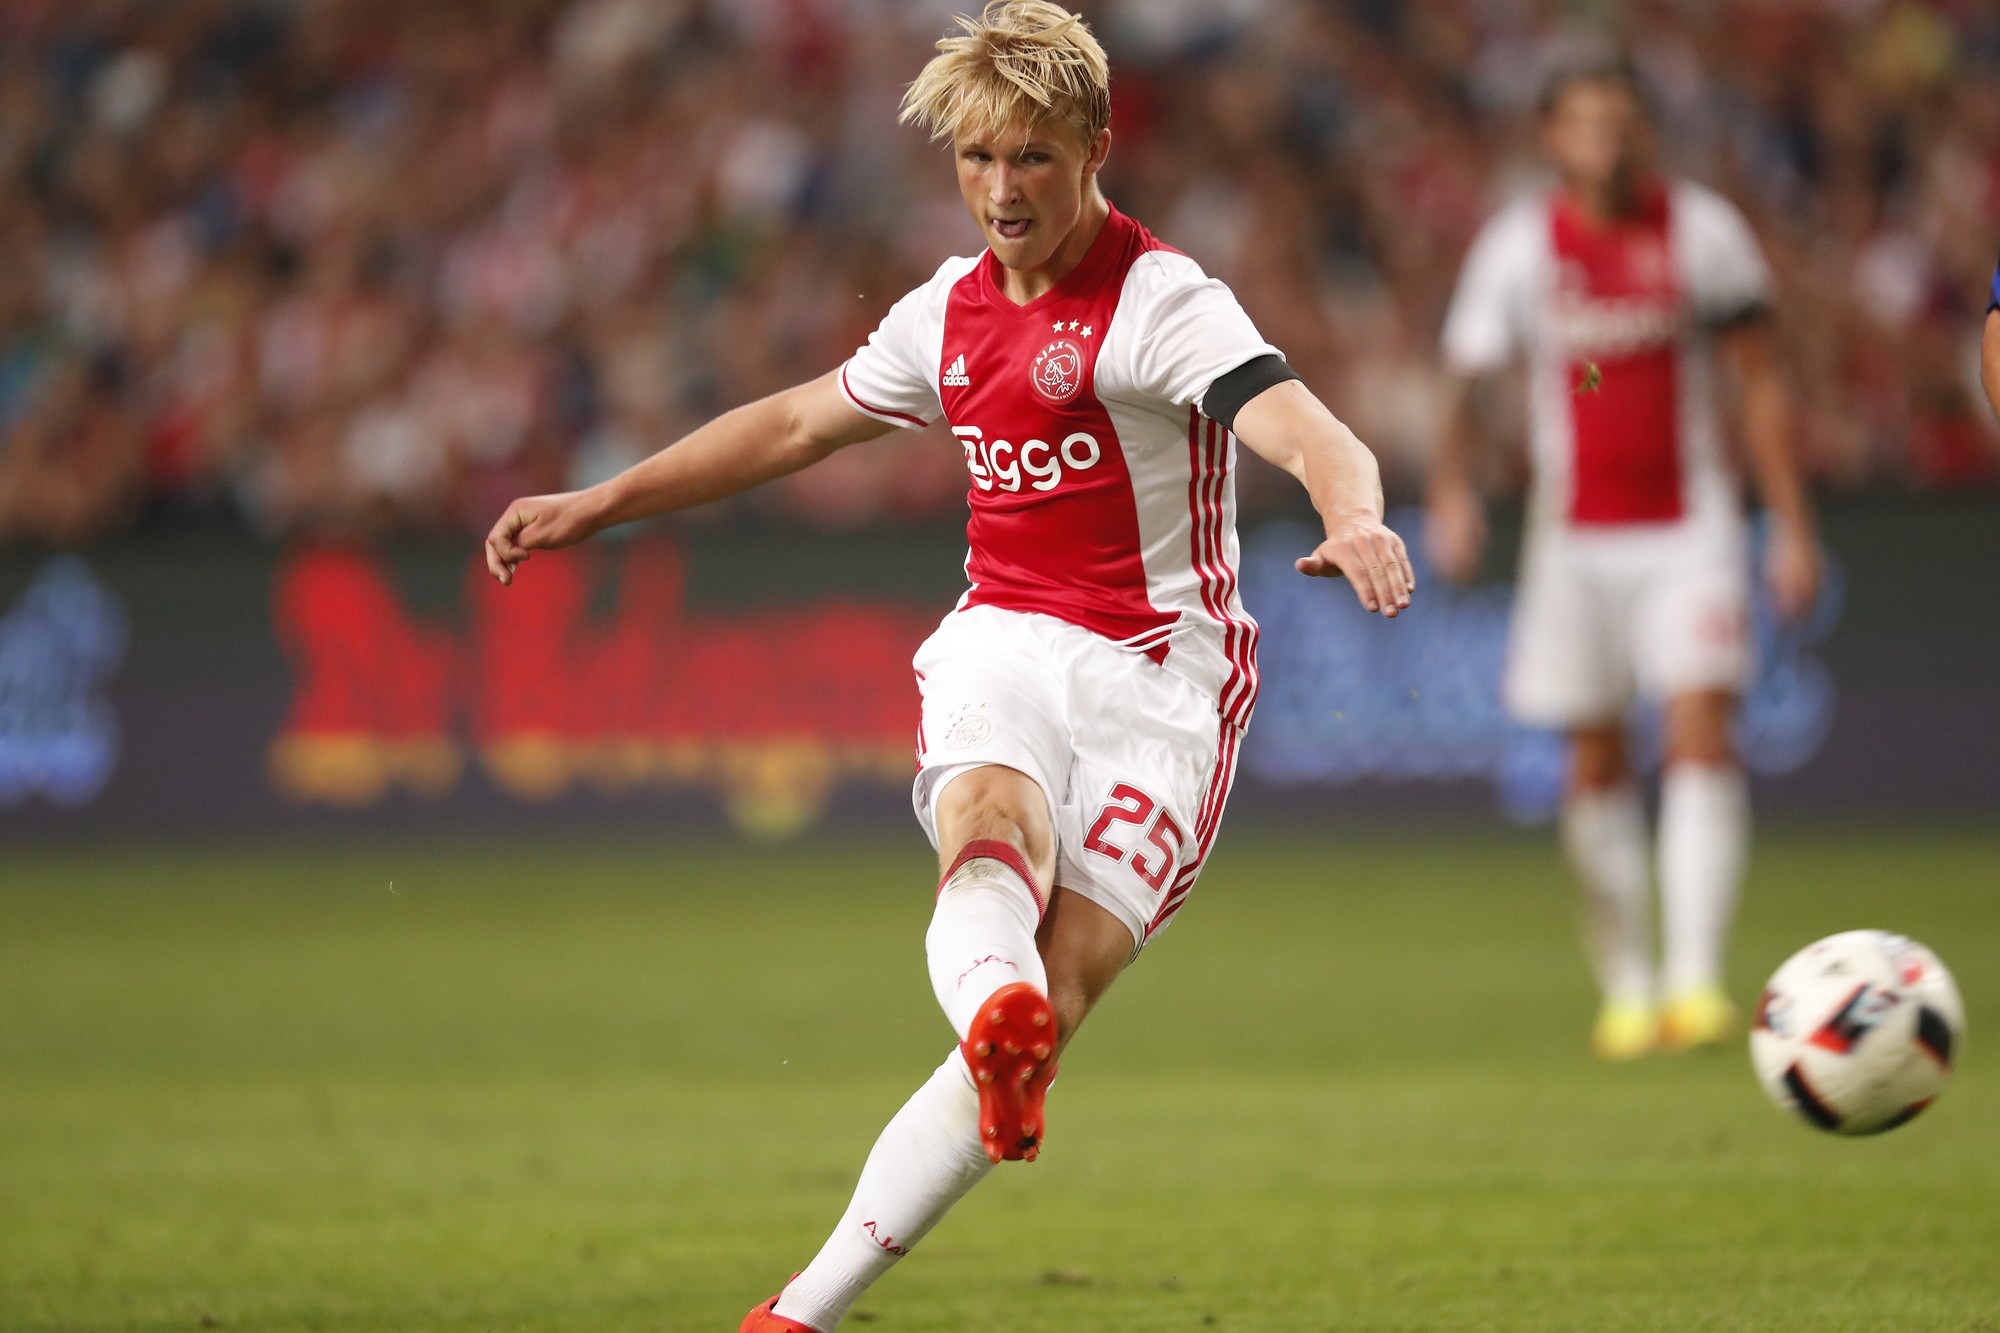 Mới 19 tuổi nhưng Dolberg đã là chân sút chủ lực của Ajax